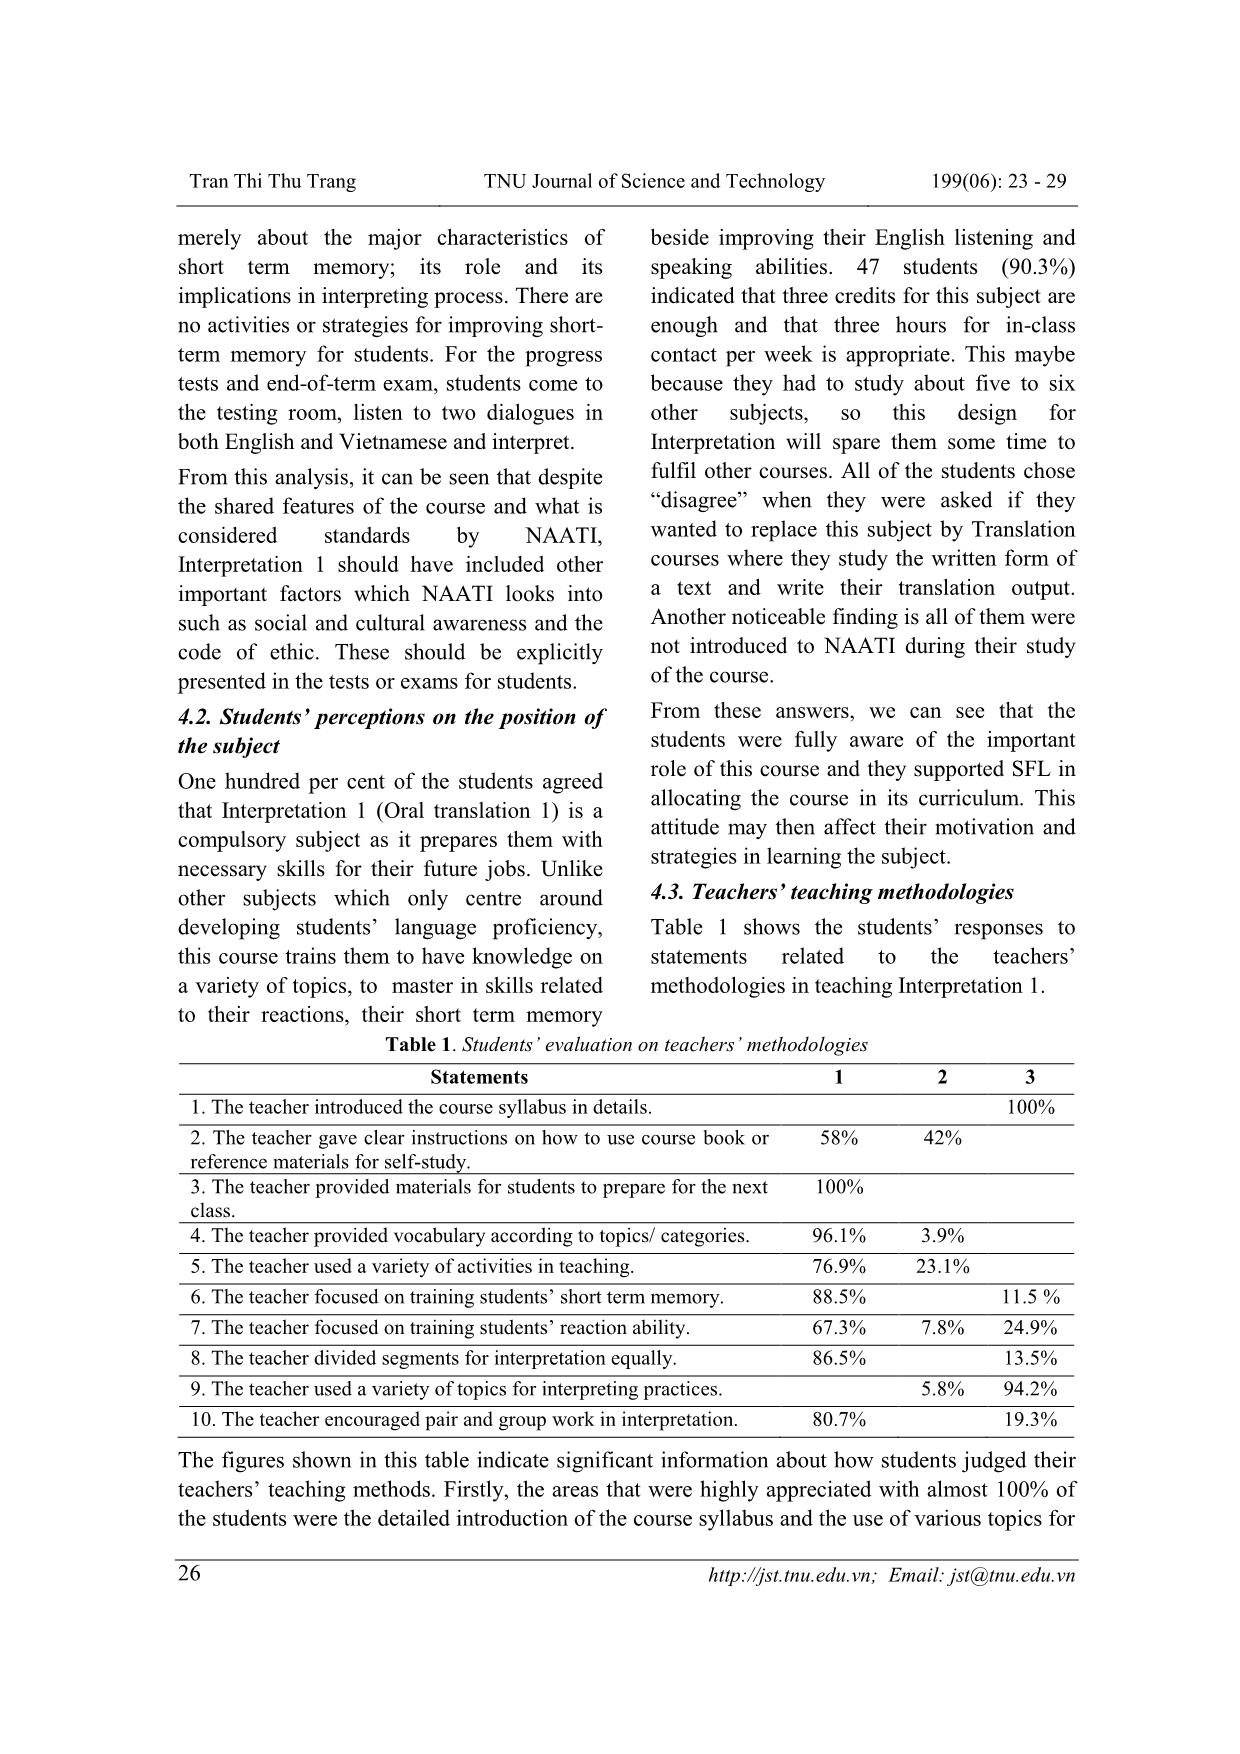 Giảng dạy môn Phiên dịch 1 tại khoa Ngoại ngữ: Đánh giá tổng quan và đề xuất hoạt động trang 4